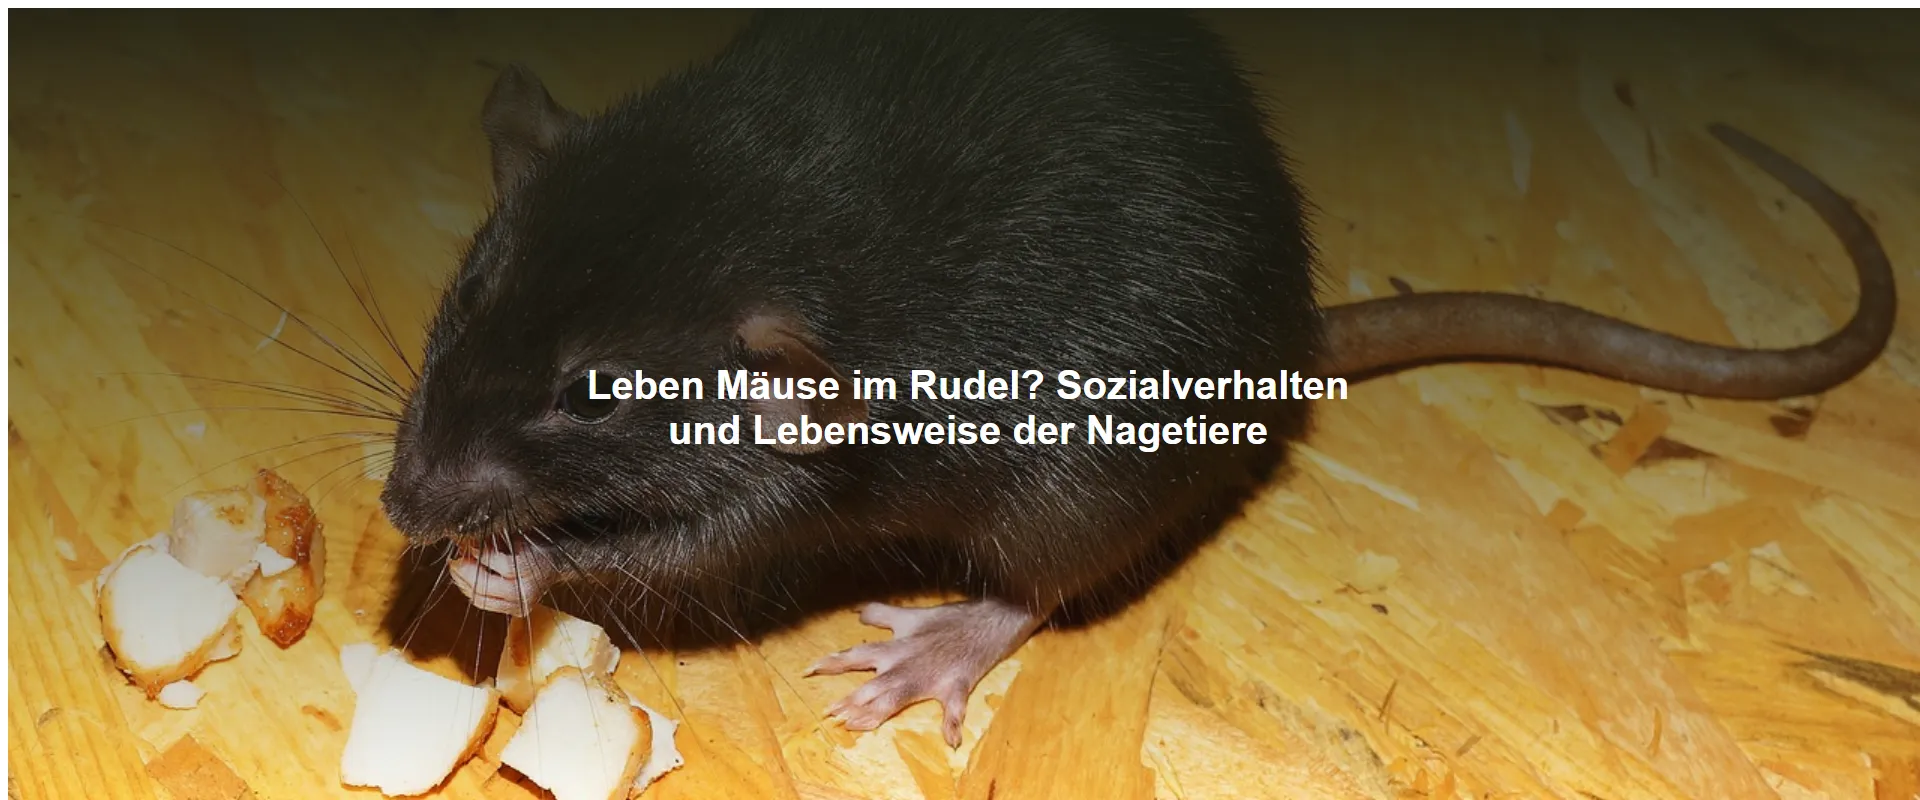 Leben Mäuse im Rudel? Sozialverhalten und Lebensweise der Nagetiere